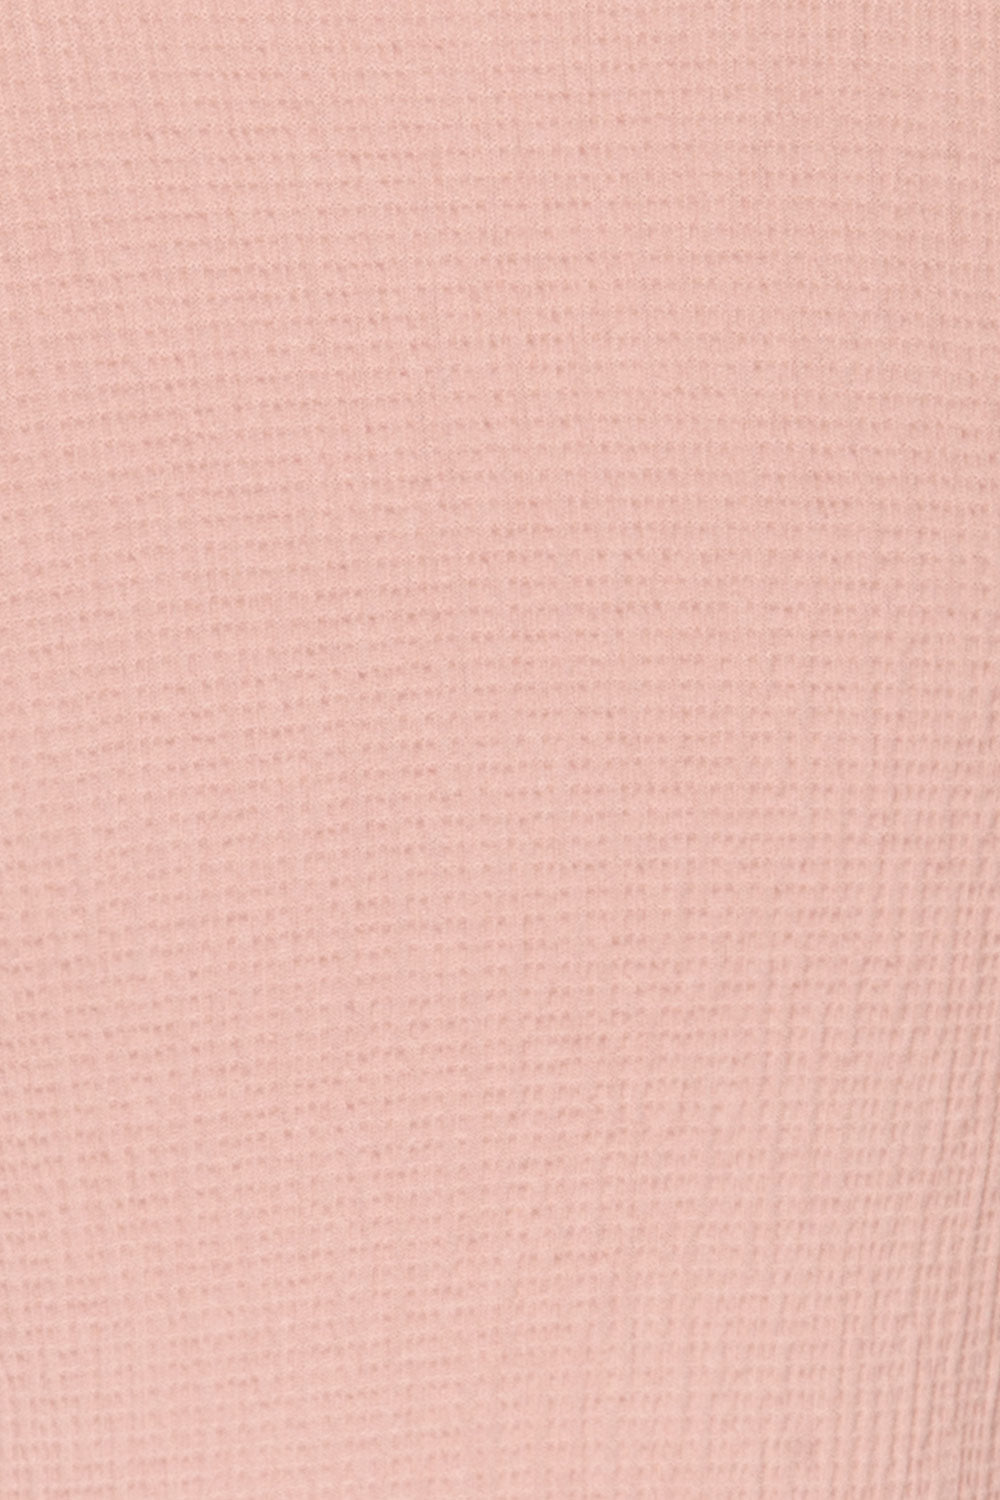 Cardiff Mauve Lilac V-Neck Knotted Top | La Petite Garçonne fabric detail 